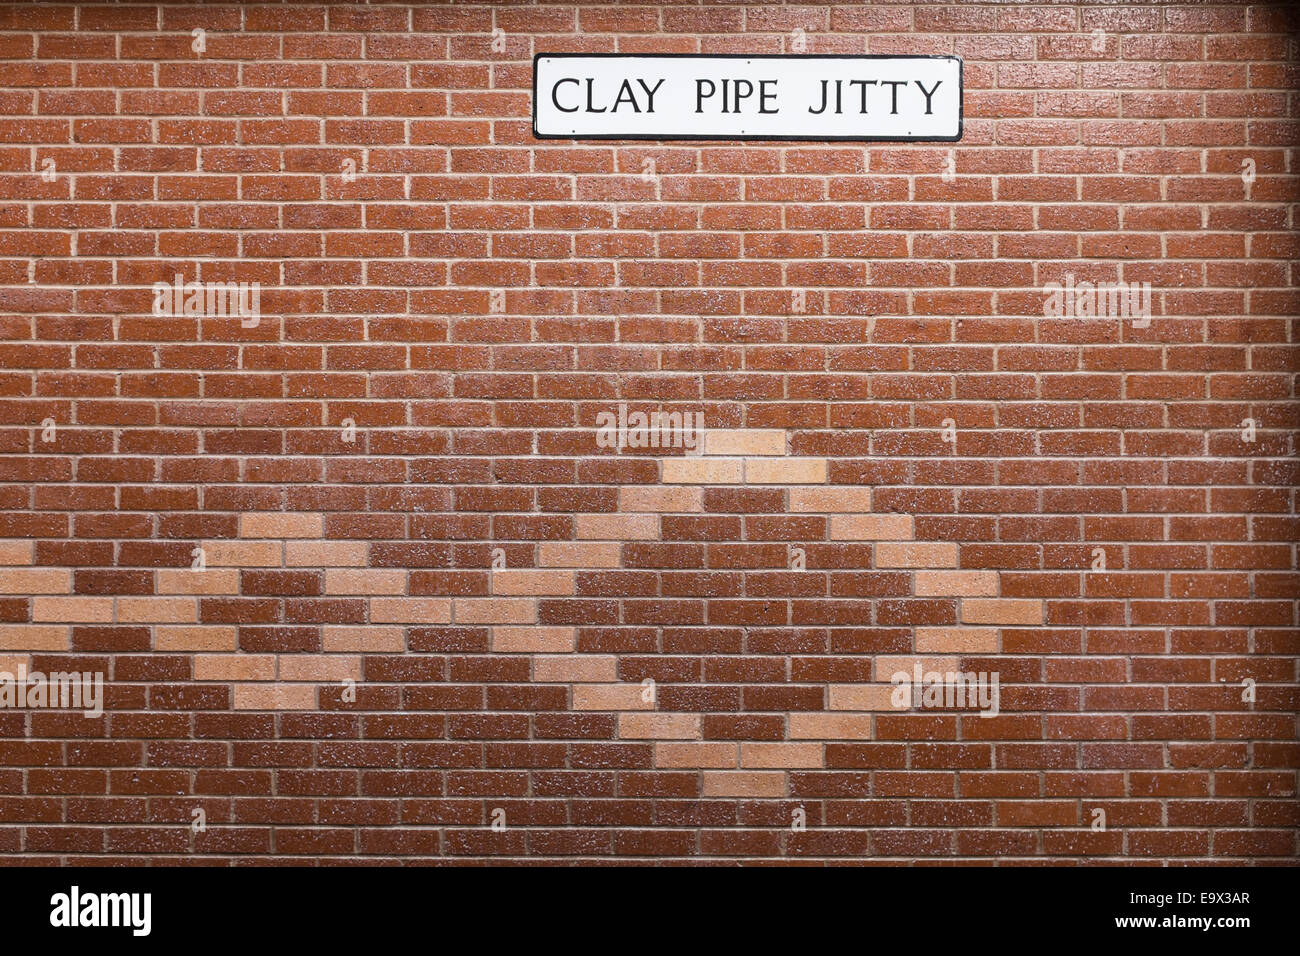 Mur de briques avec inserts décoratifs à motifs en brique et un étrange nom de rue signe pipe en argile jitty'. Banque D'Images